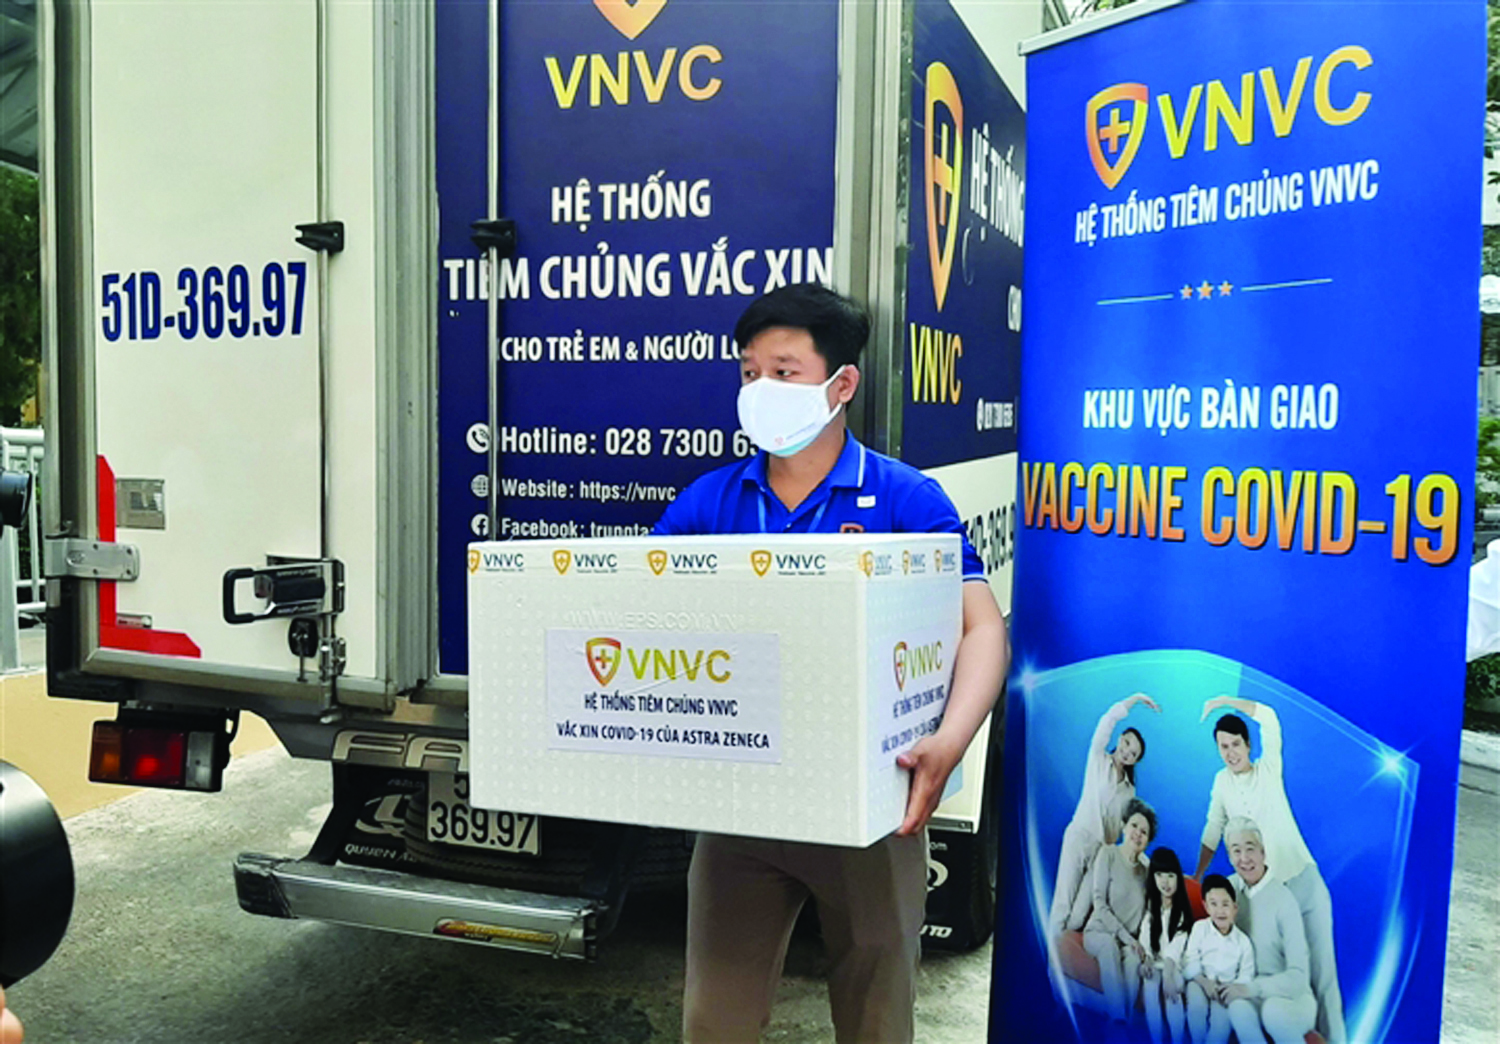  Bộ Y tế đã làm việc với Hệ thống tiêm chủng VNVC để mua lại và phân bổ lô vắc xin AstraZeneca 288.000 liều cho các tỉnh đang có dịch COVID-19 sau hơn 20 ngày nhập khẩu về Việt Nam. Ảnh: M.Thúy